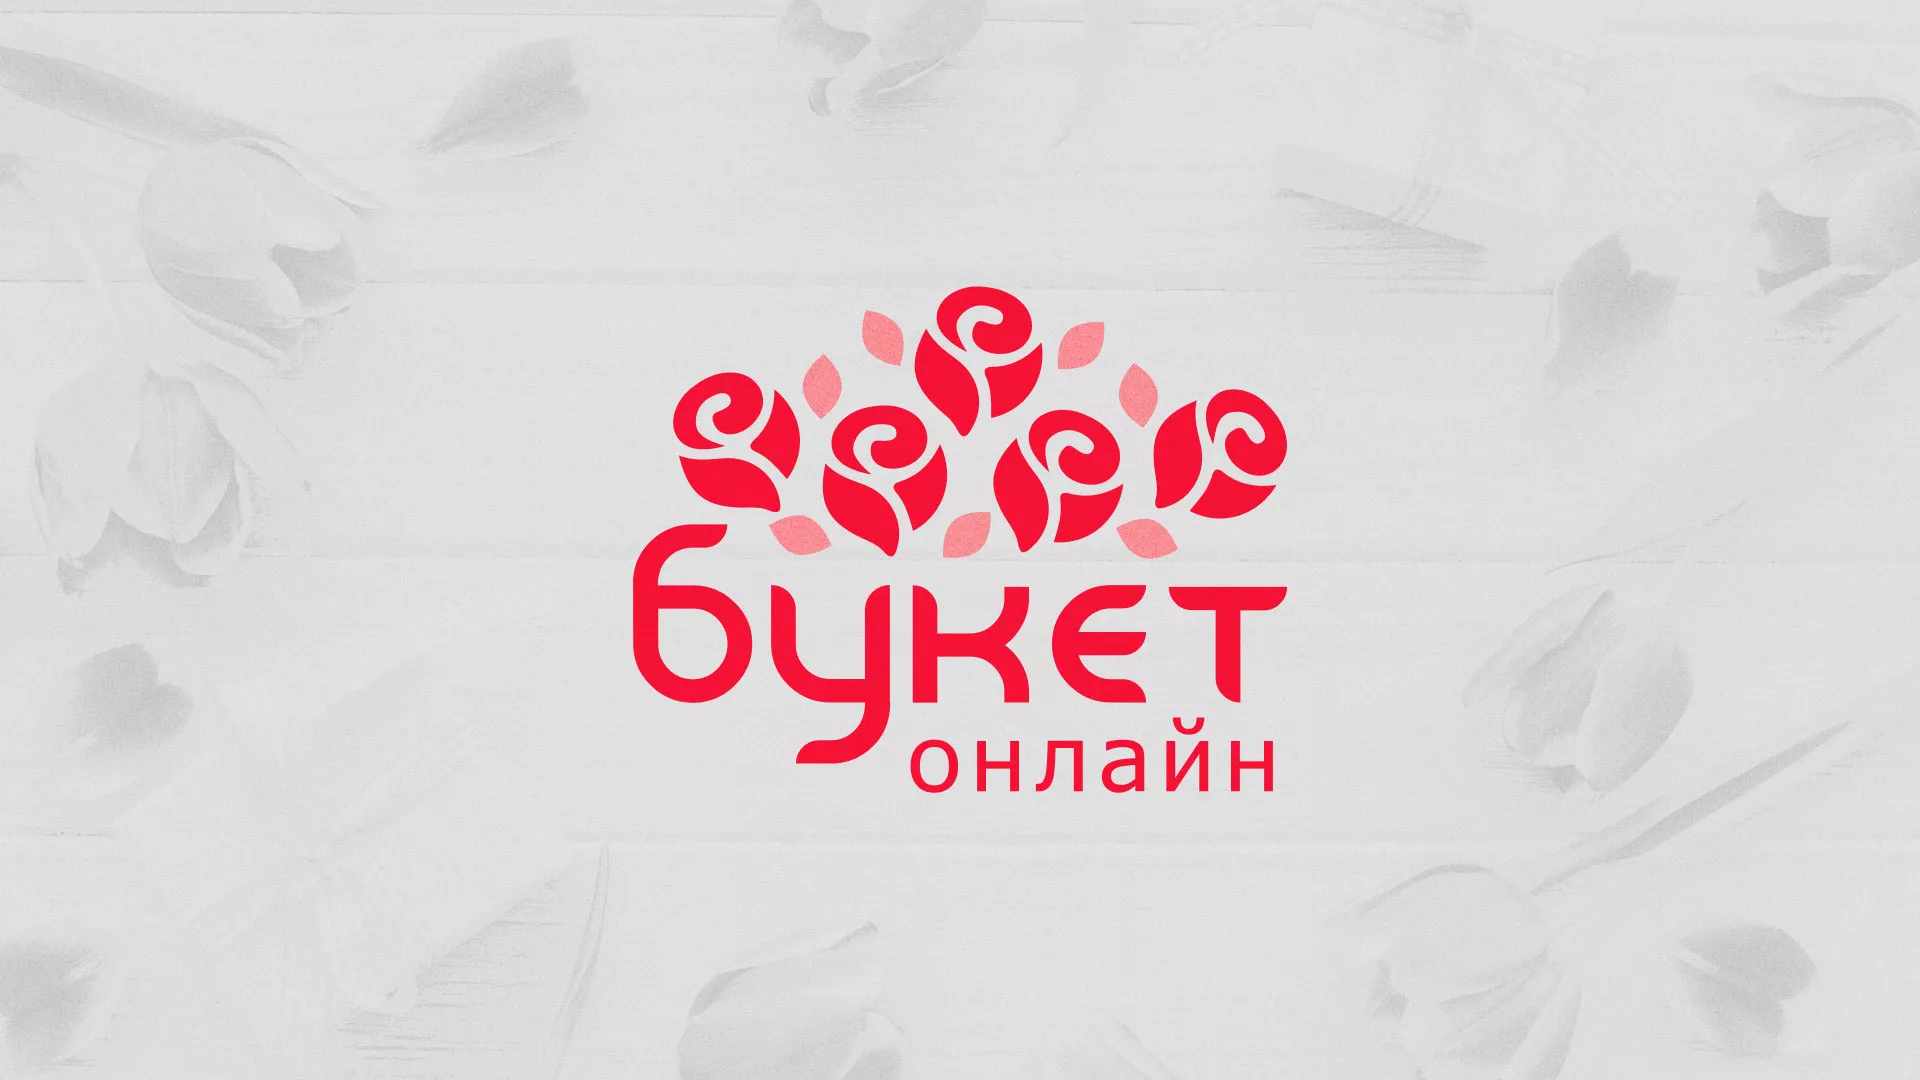 Создание интернет-магазина «Букет-онлайн» по цветам в Козьмодемьянске